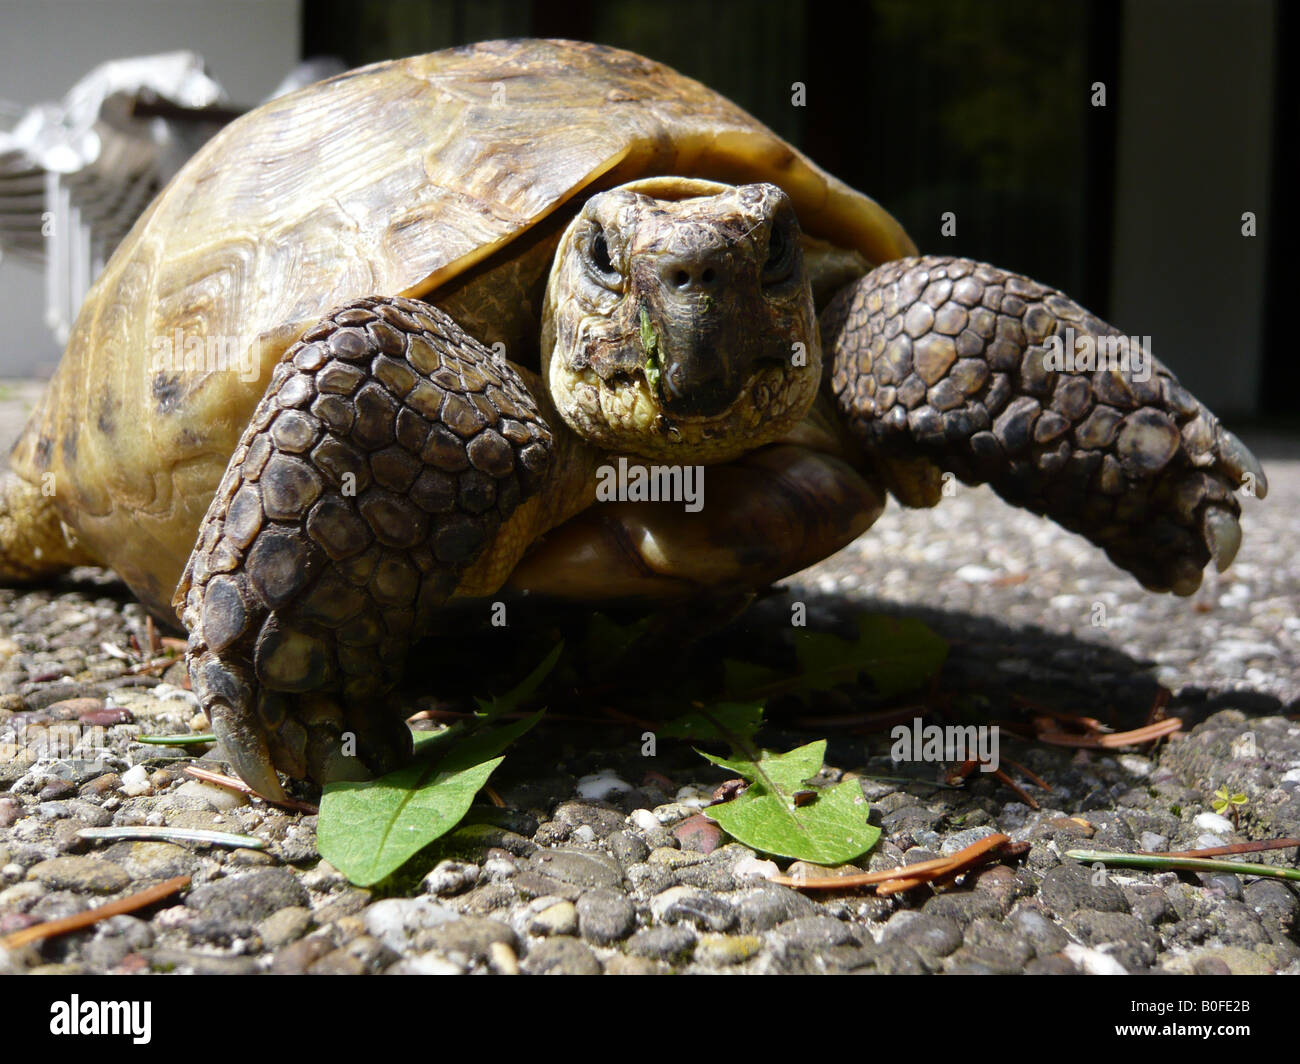 Russian tortoise (Testudo horsfieldii) in a garden in Germany Stock Photo